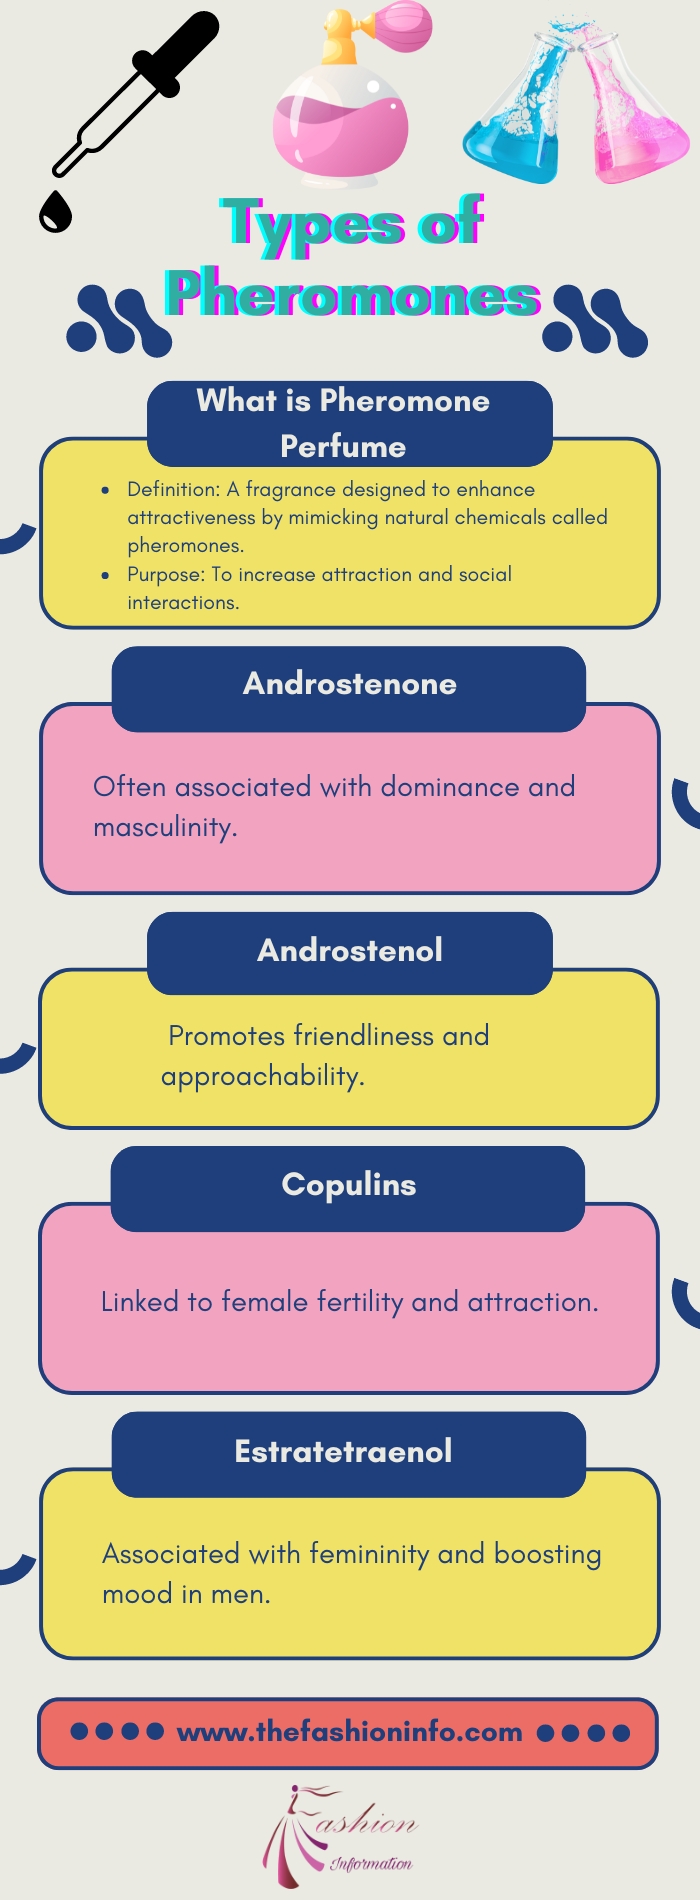 Types of Pheromones